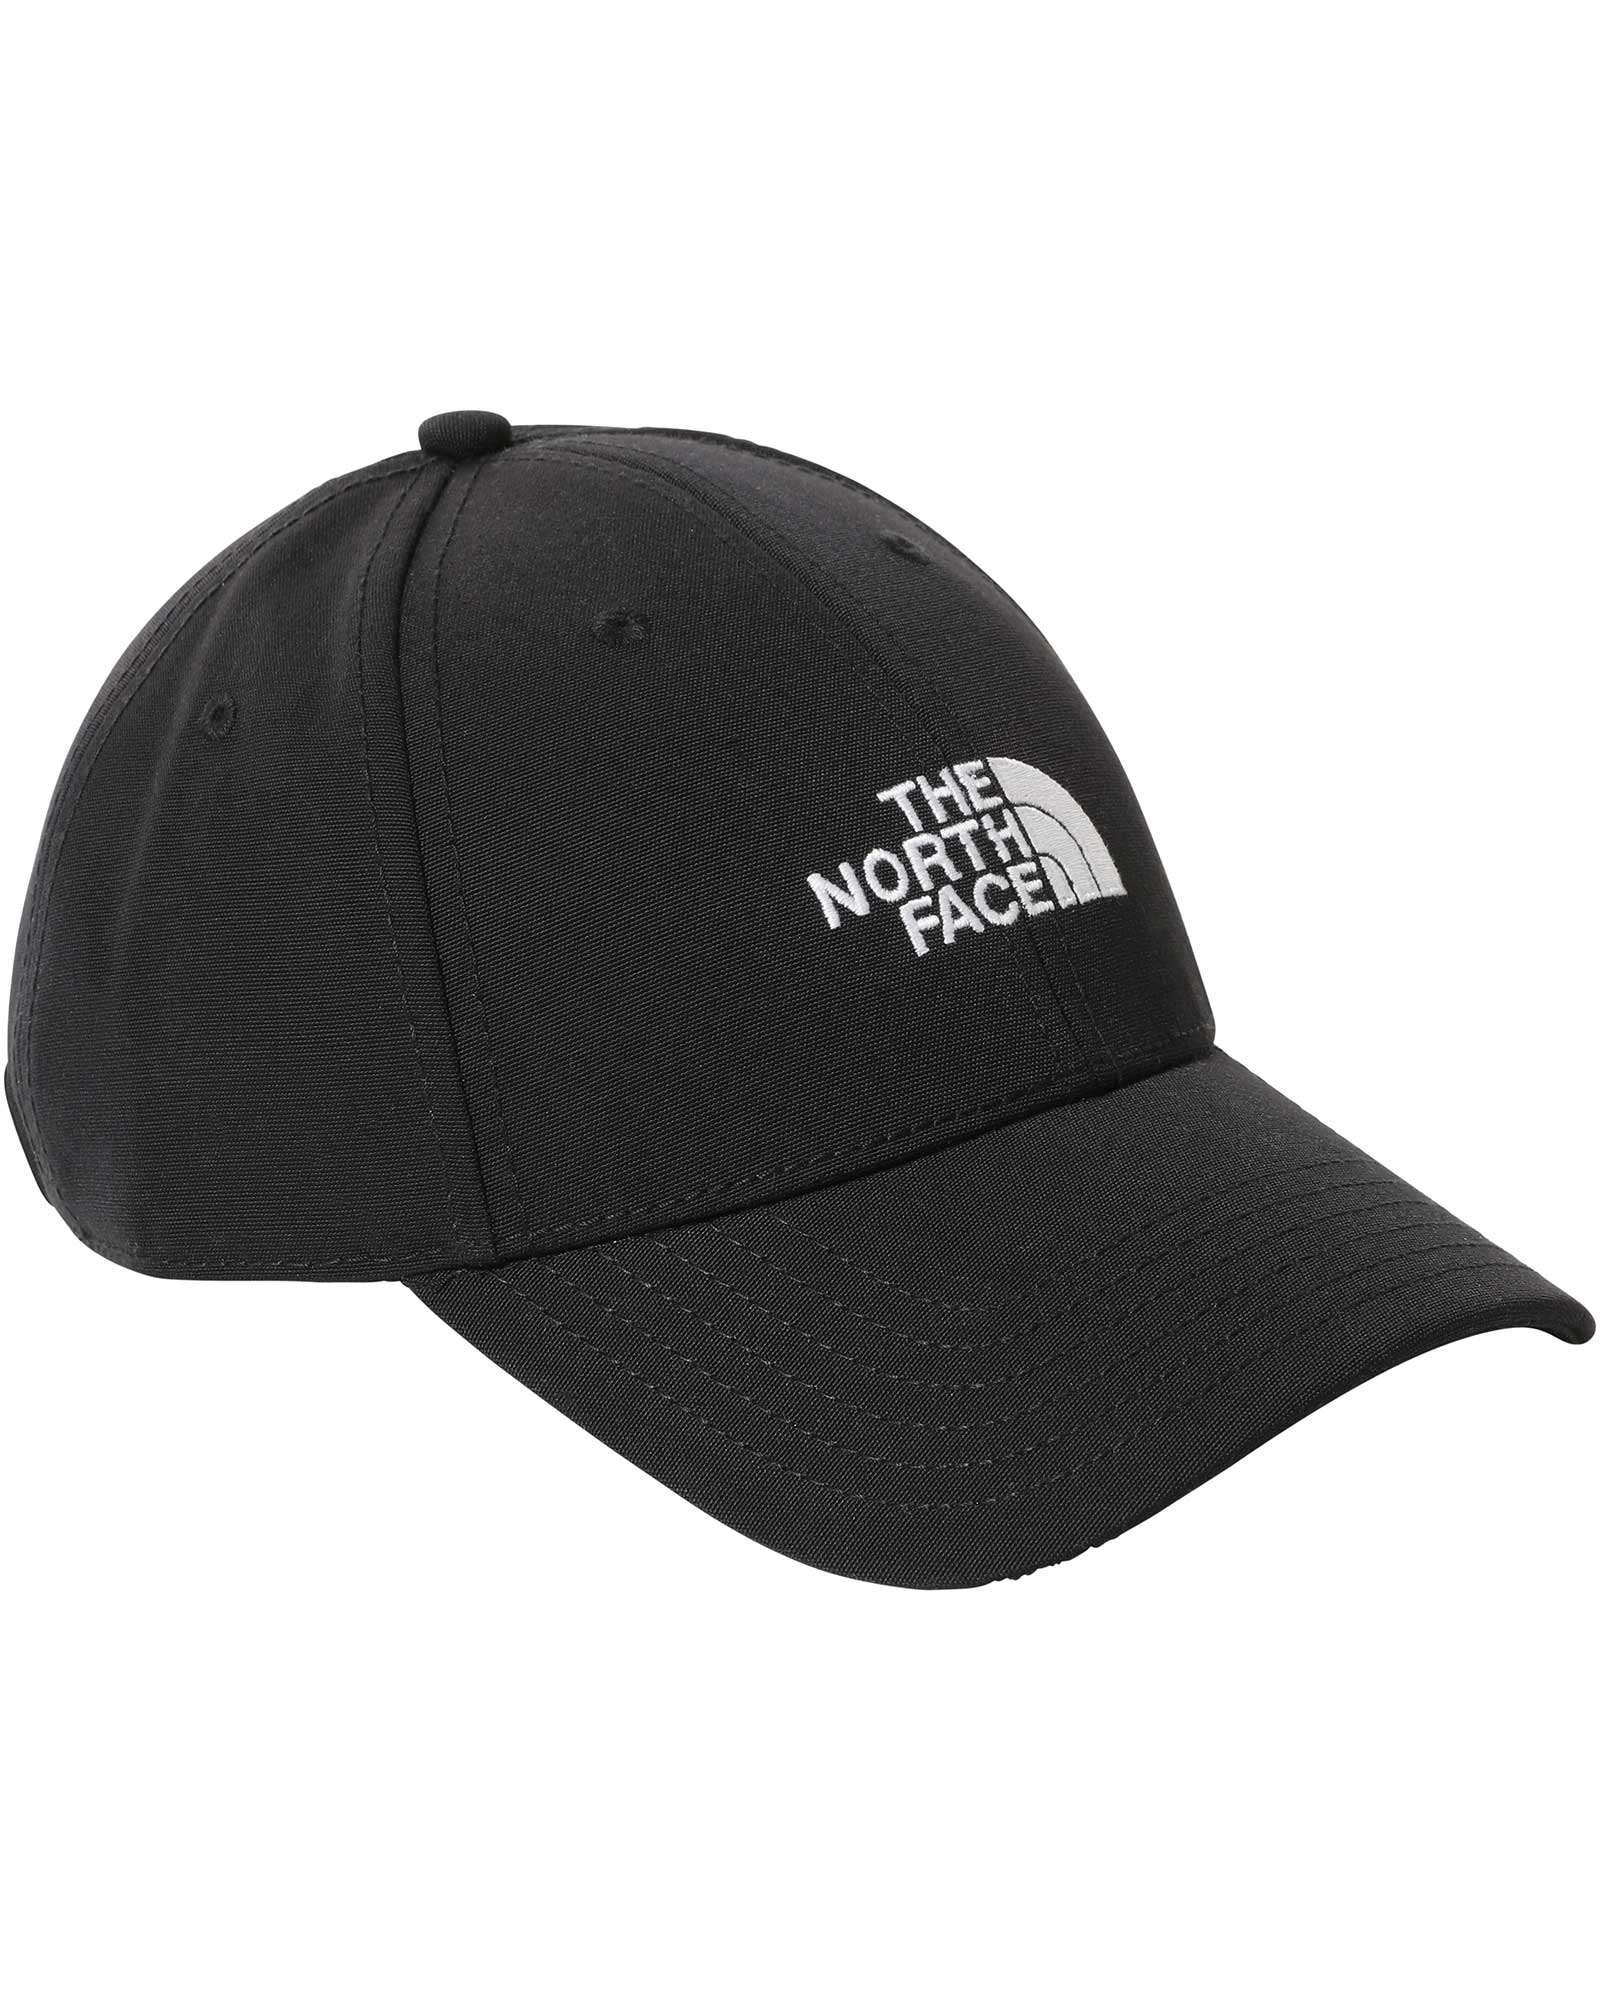 The North Face 66 Classic Logo Hat - TNF Black/TNF White